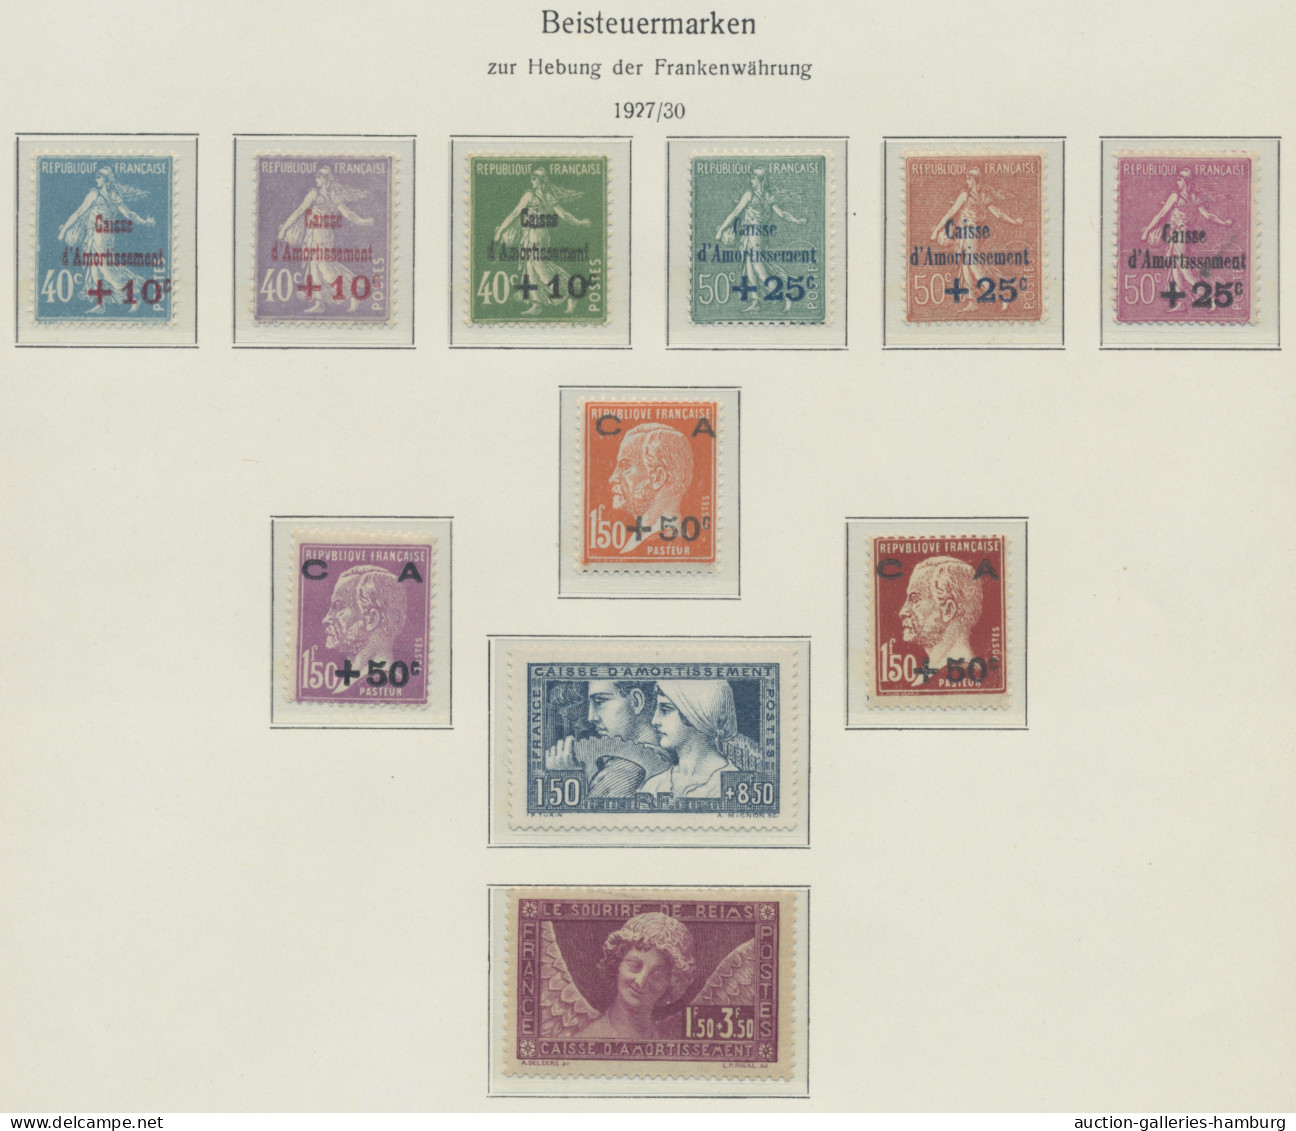 France: 1877-1990, fast ausschließlich postfrisch geführte Sammlung in zwei KABE